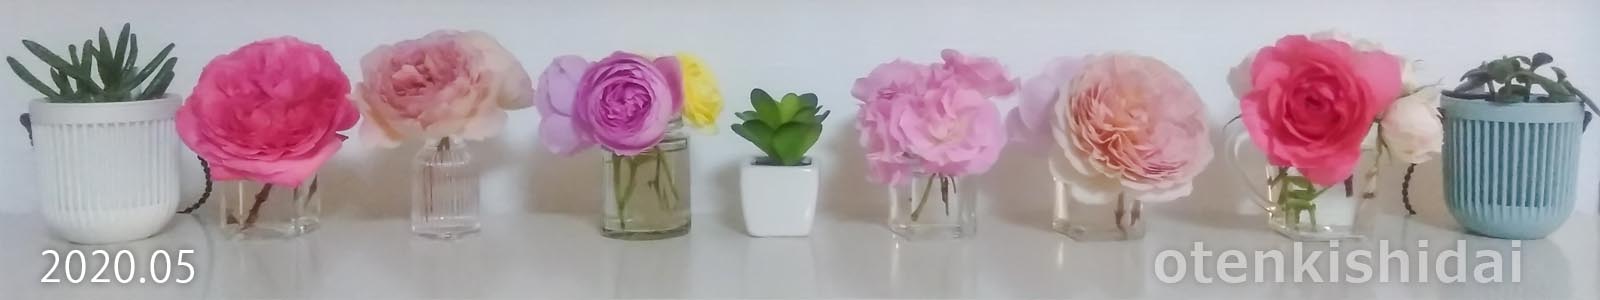 小型の花器に飾ったバラ